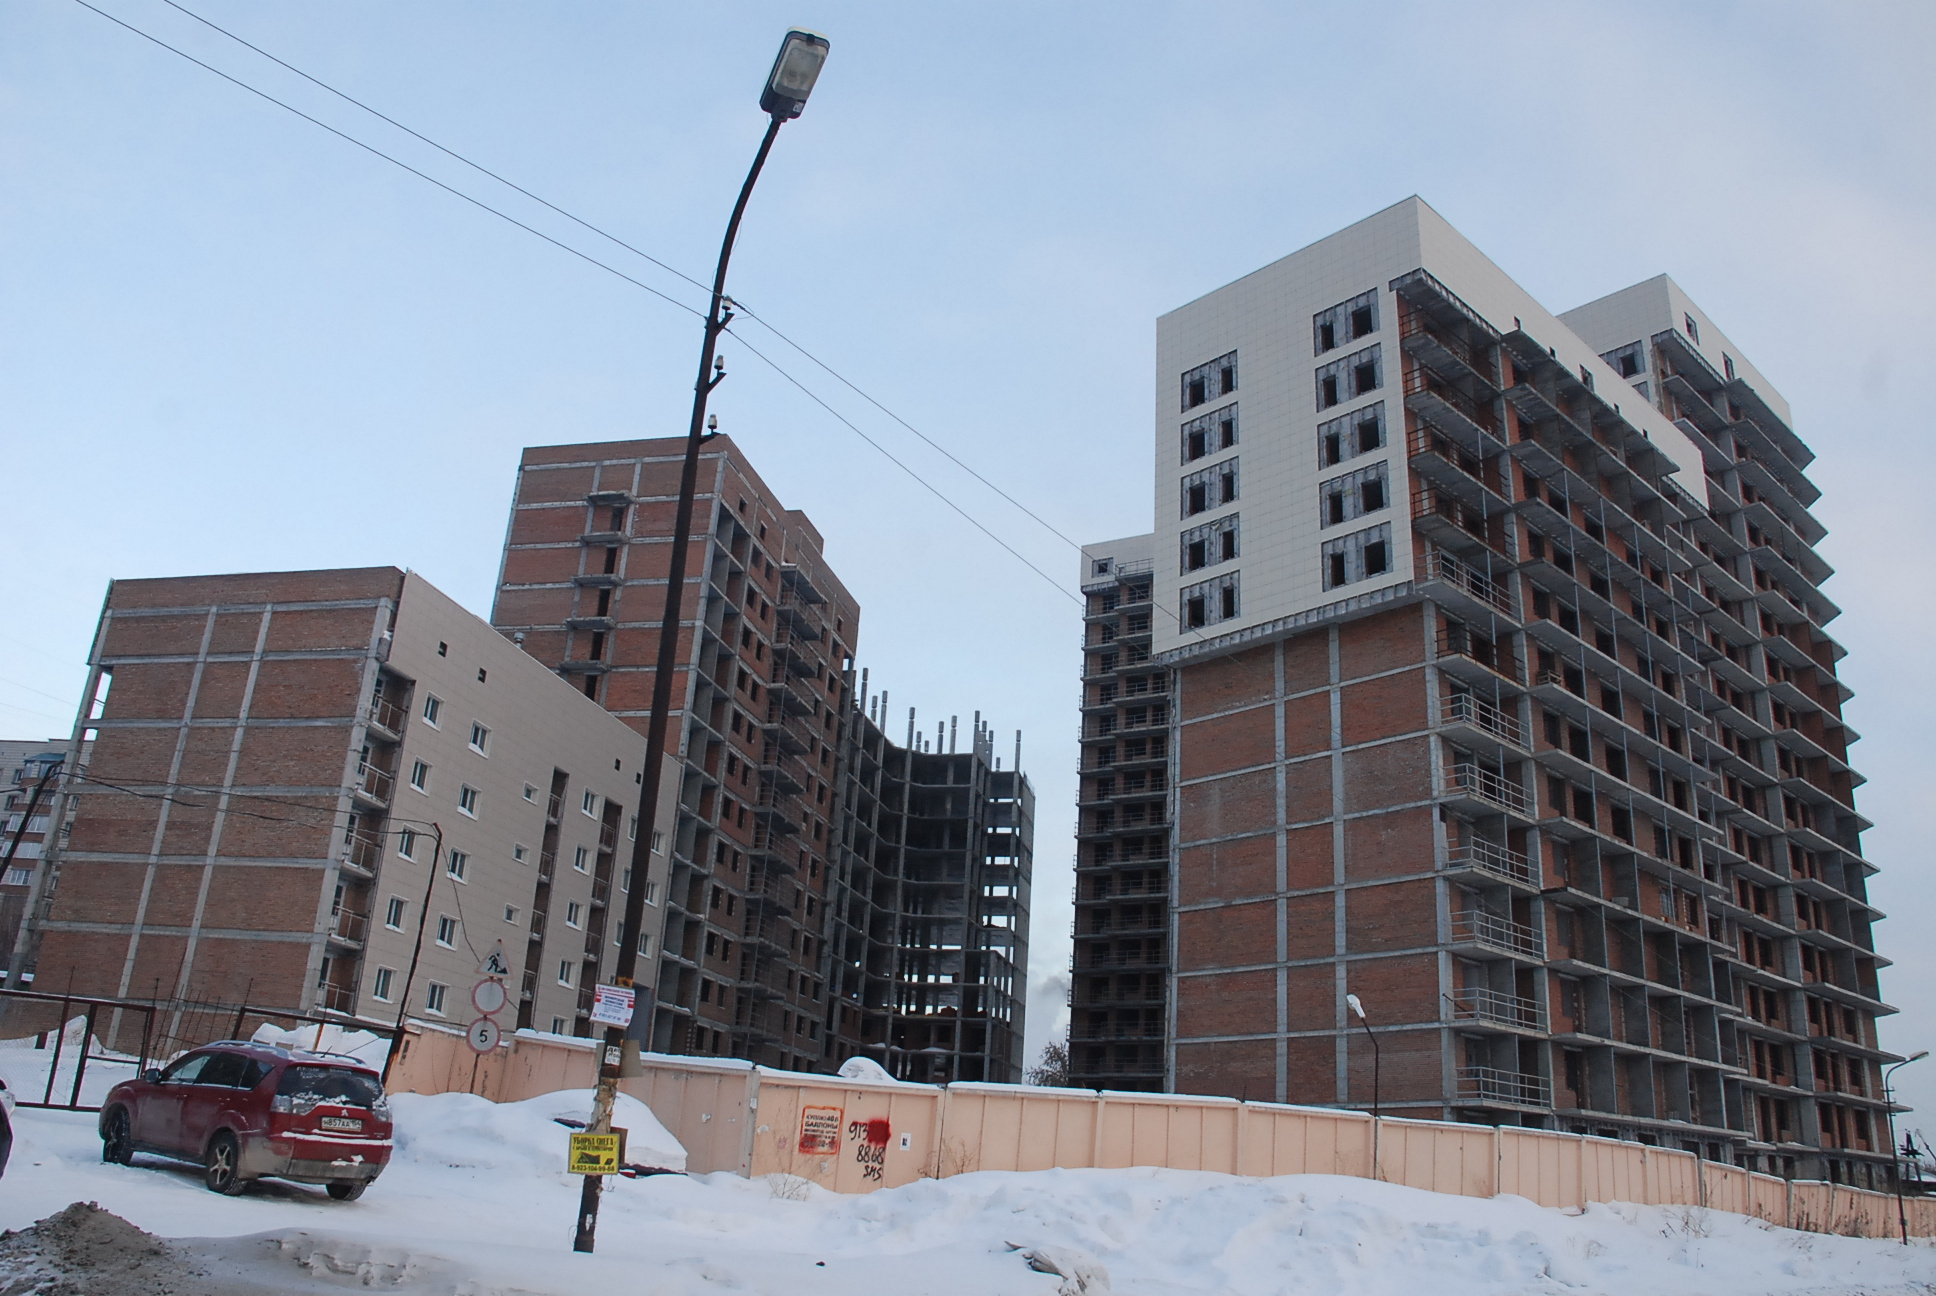 Строительство жилого комплекса на ул. Тульской, 80 и 82 ведется с 2004 года — своих квартир сейчас ждут около 500 семей